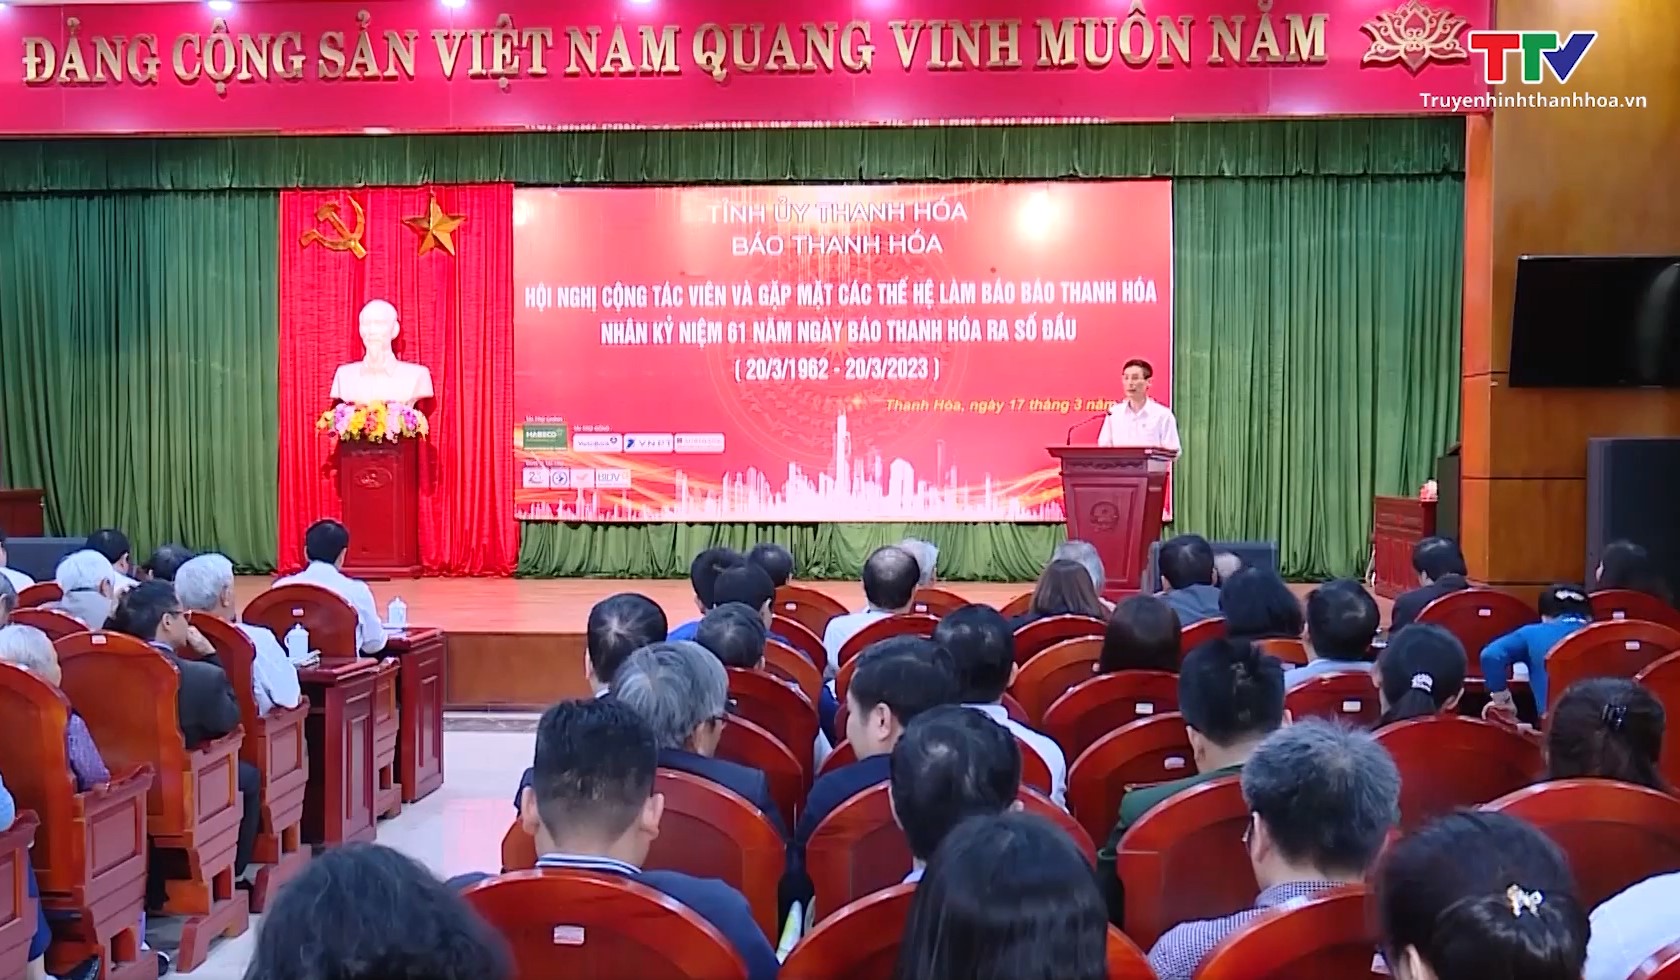 Báo Thanh Hóa tổ chức gặp mặt nhân dịp kỷ niệm 61 năm ngày ra số đầu - Ảnh 2.